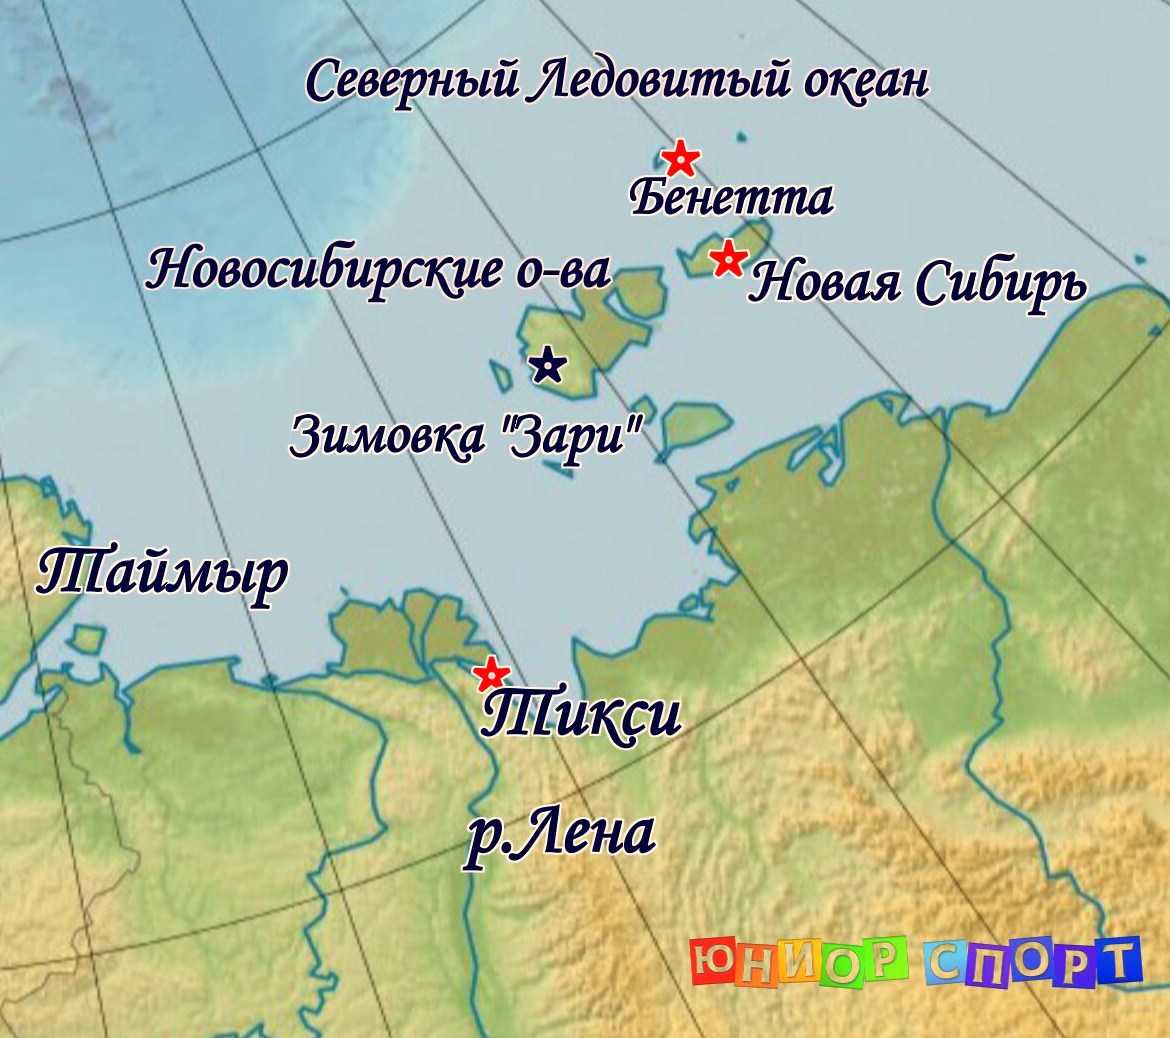 Где находится северный полуостров. Мыс Челюскин на полуострове Таймыр на карте. Полуостров Таймыр мыс Челюскин. Мыс Челюскин на полуострове Таймыр на карте России. Карта мыс Челюскин на карте.